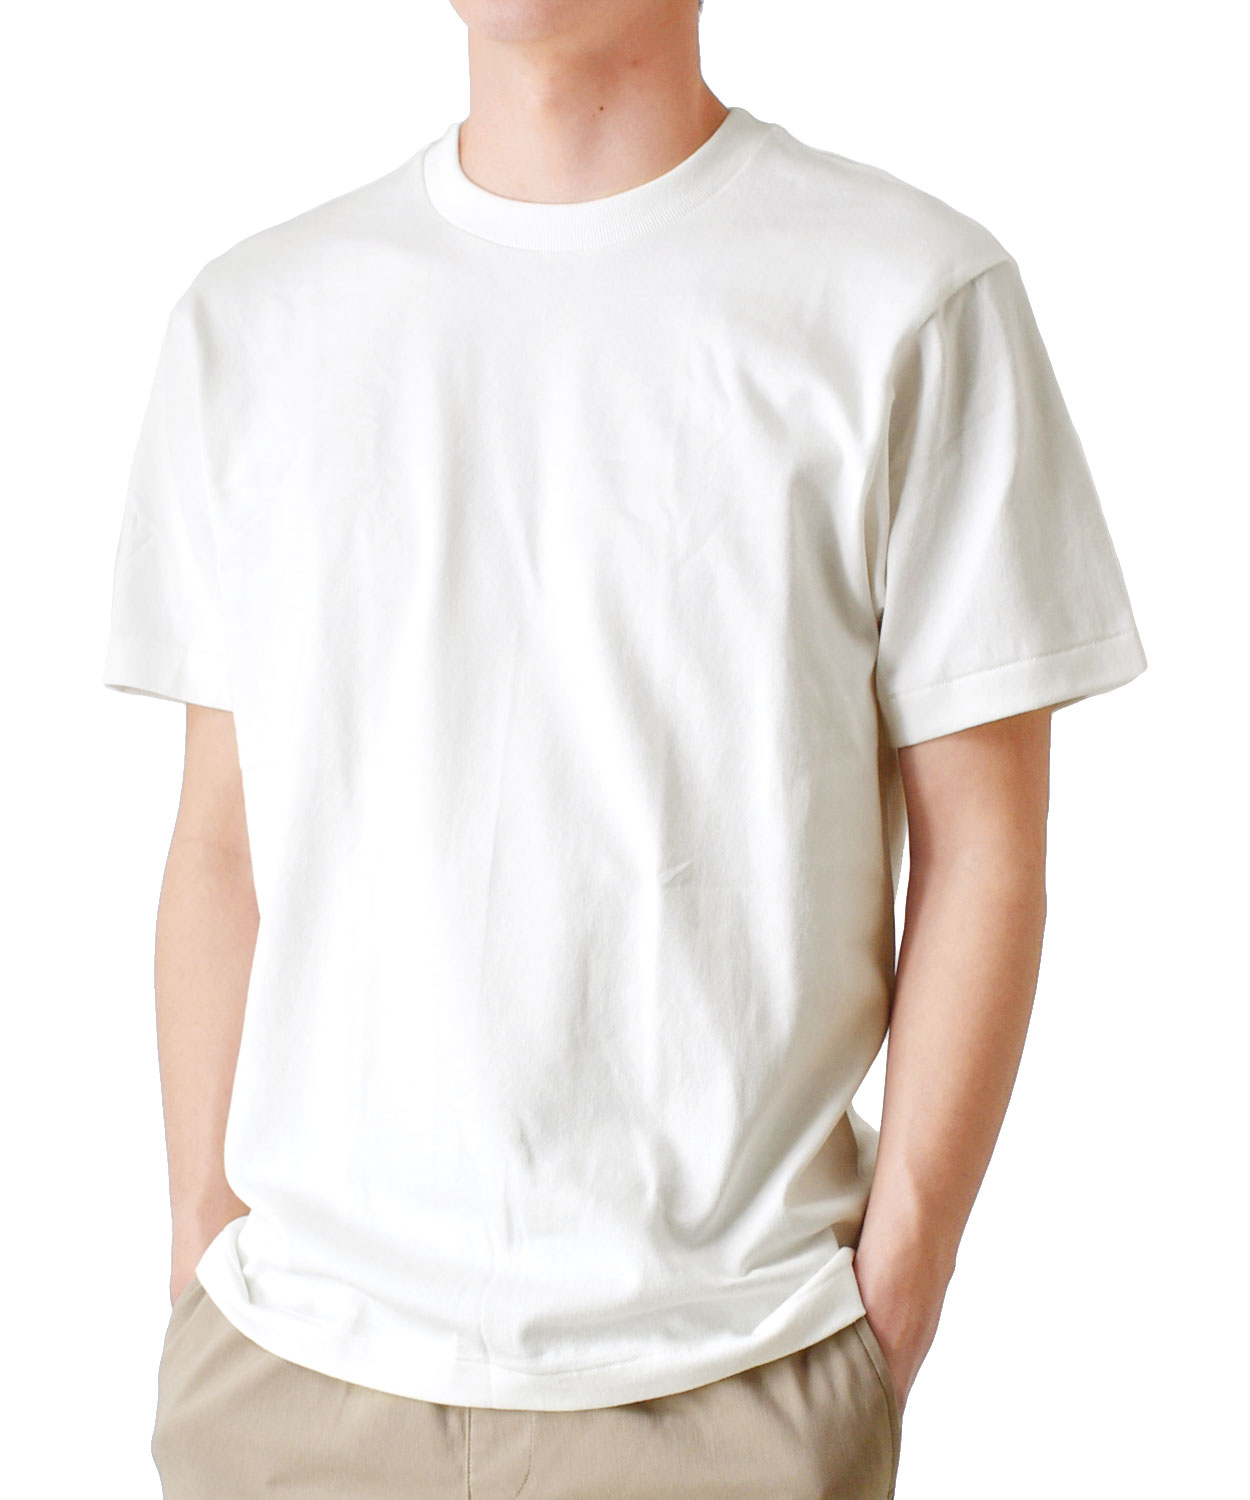 Hanes ヘインズ Tシャツ メンズ 白T SHIRO ストレッチ 半袖 送料無料 通販YC